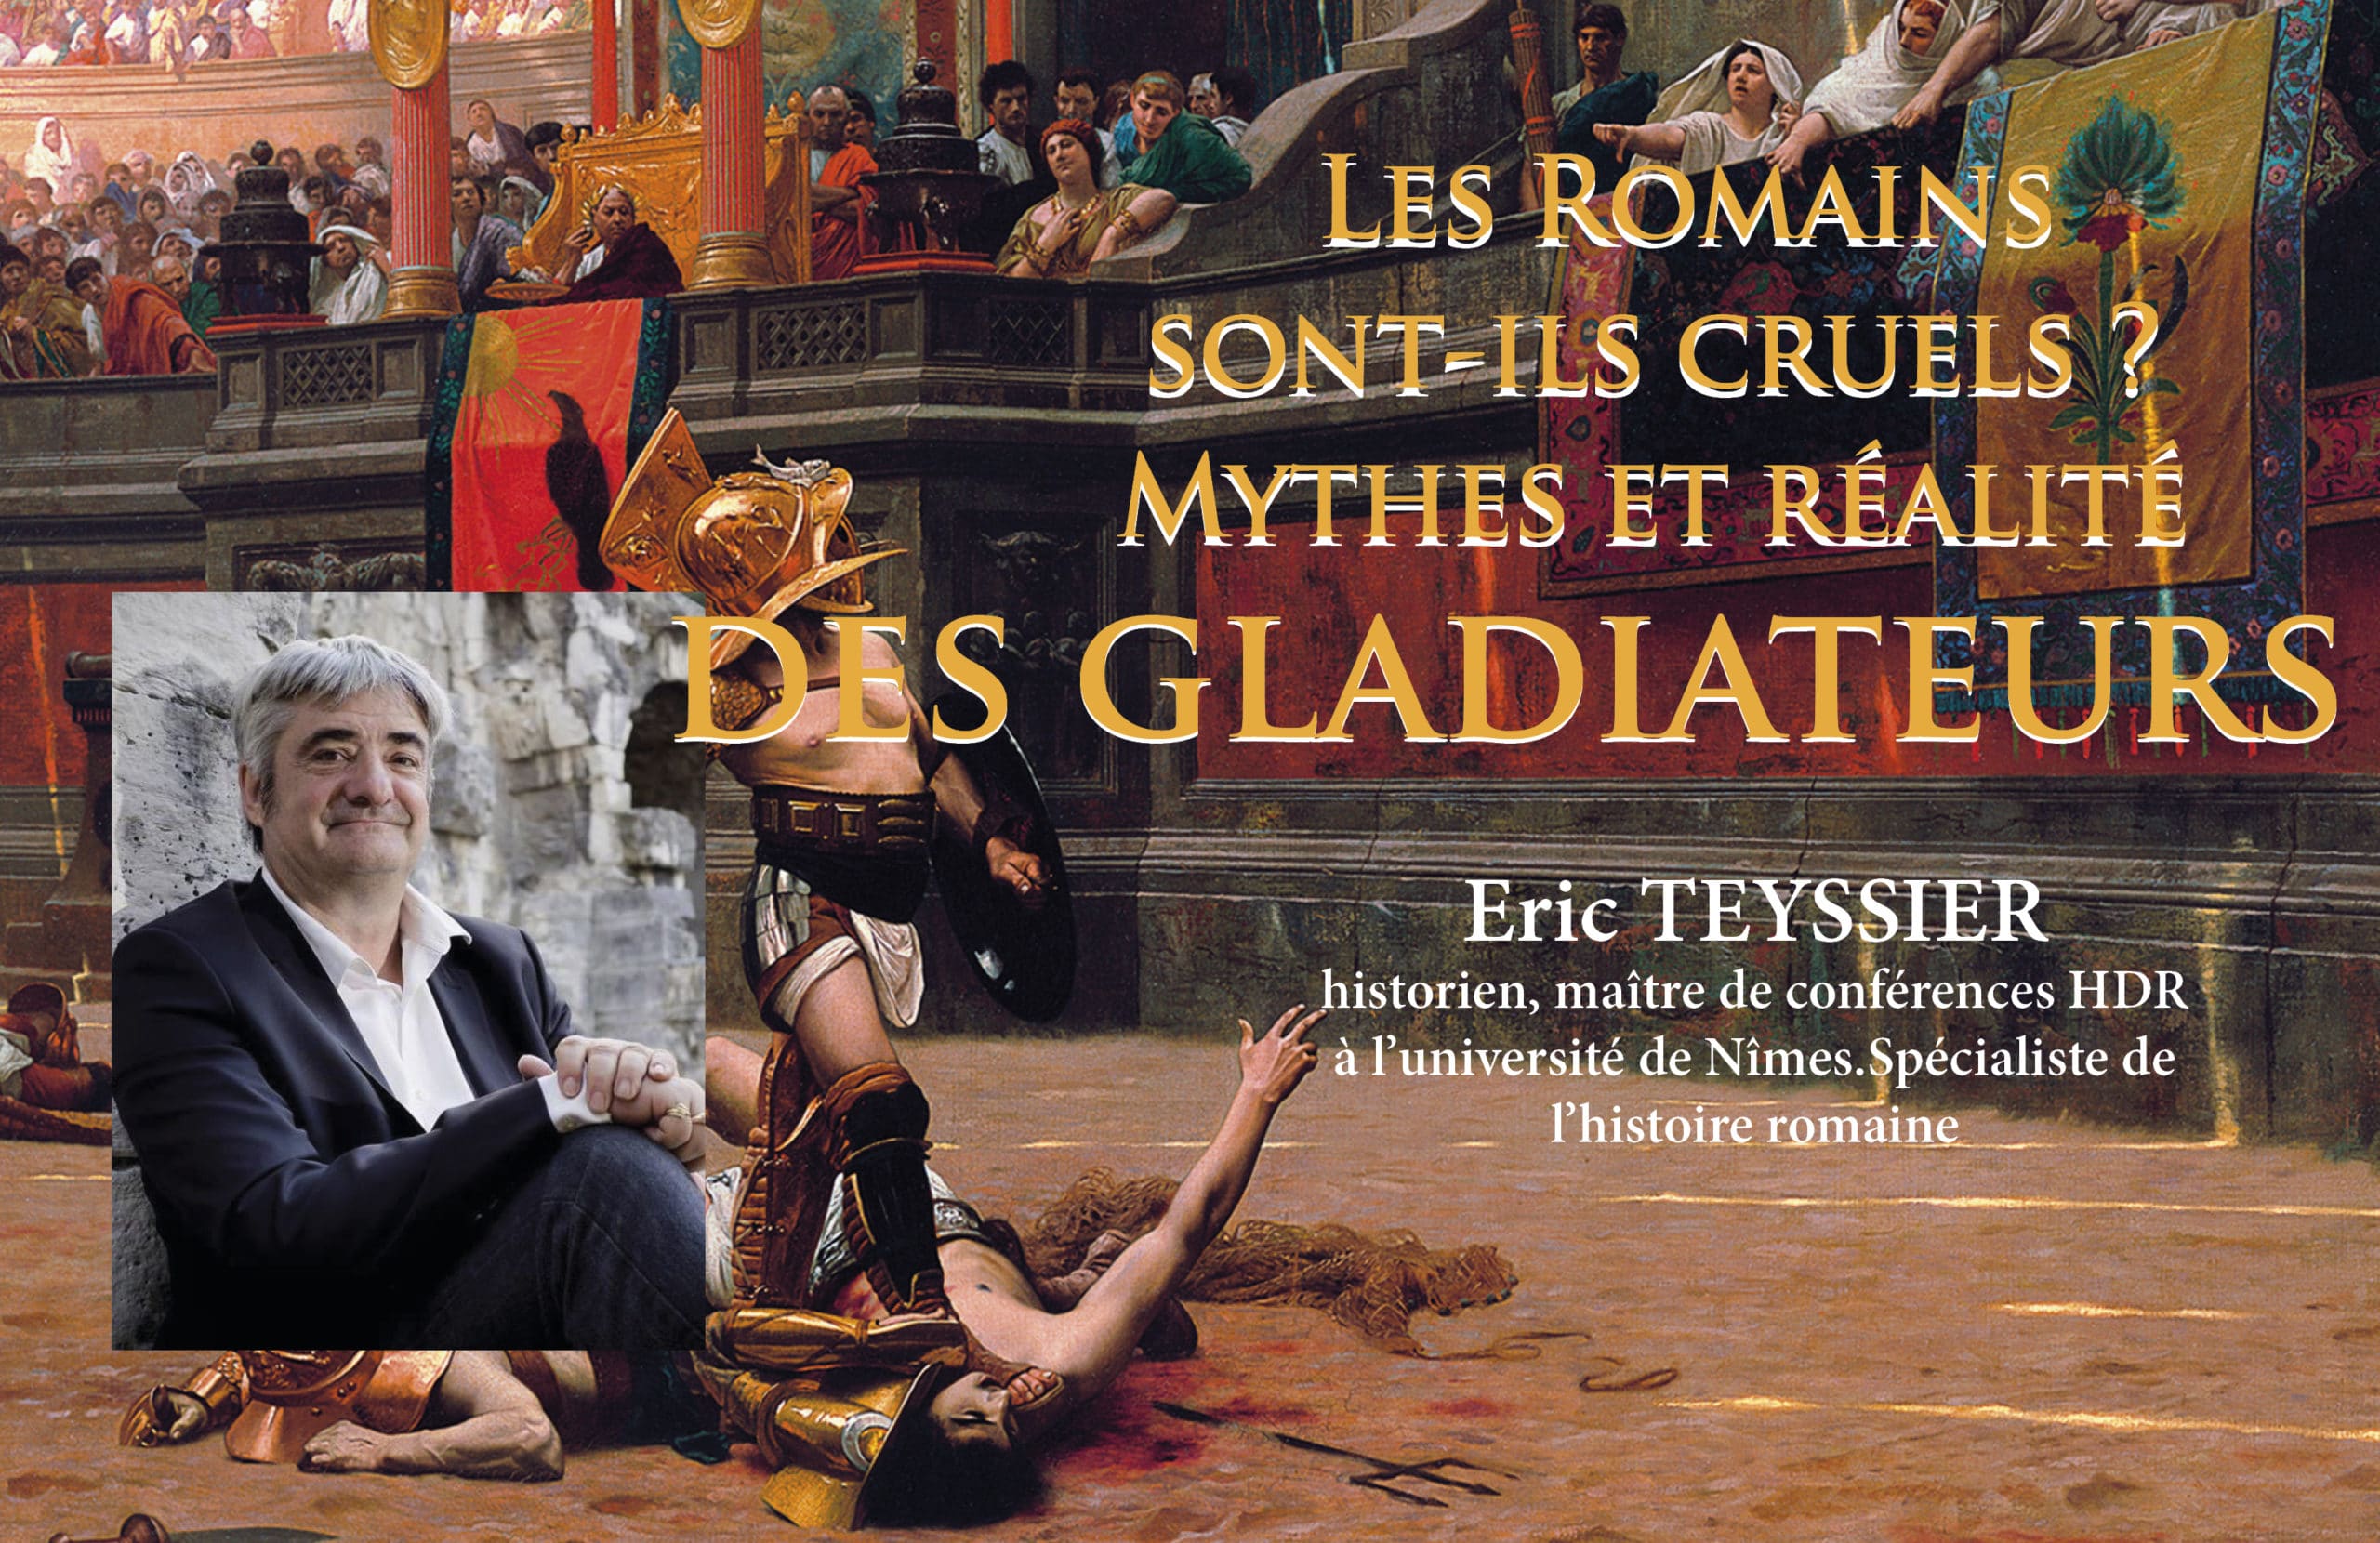 Les Romains  sont-ils cruels ? Mythes et réalité des gladiateurs. Par Eric Teyssier